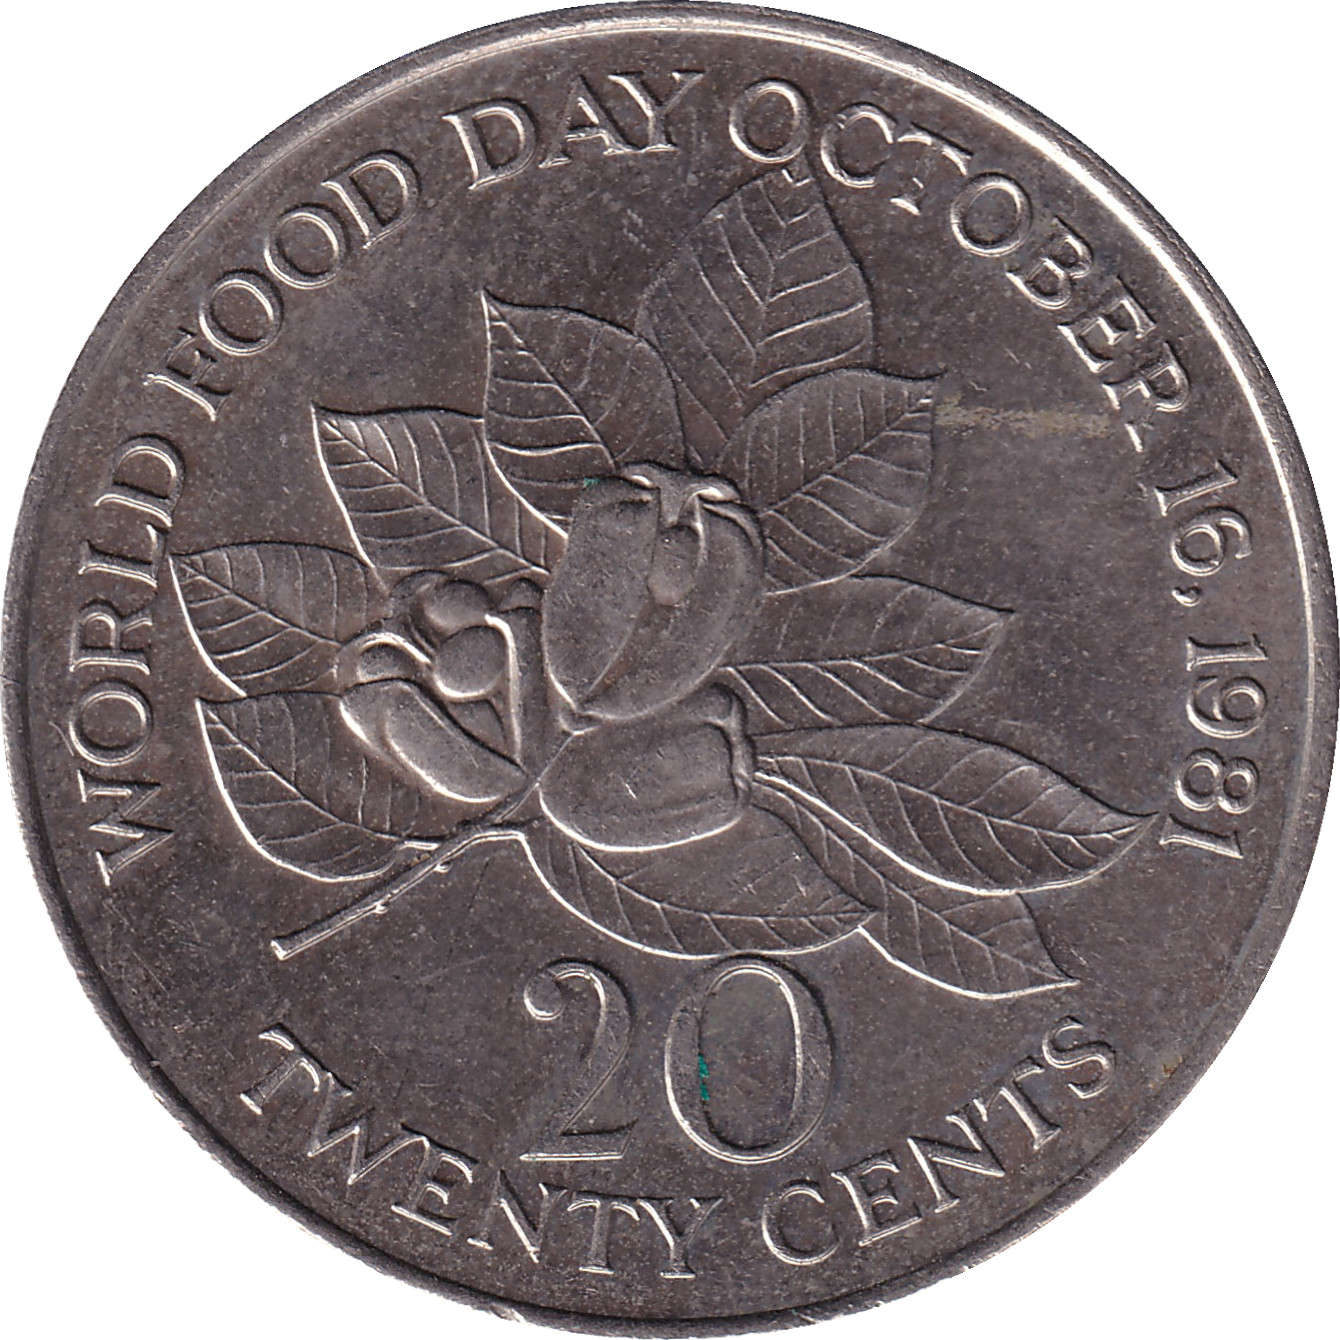 20 cents - Figs - Large legend